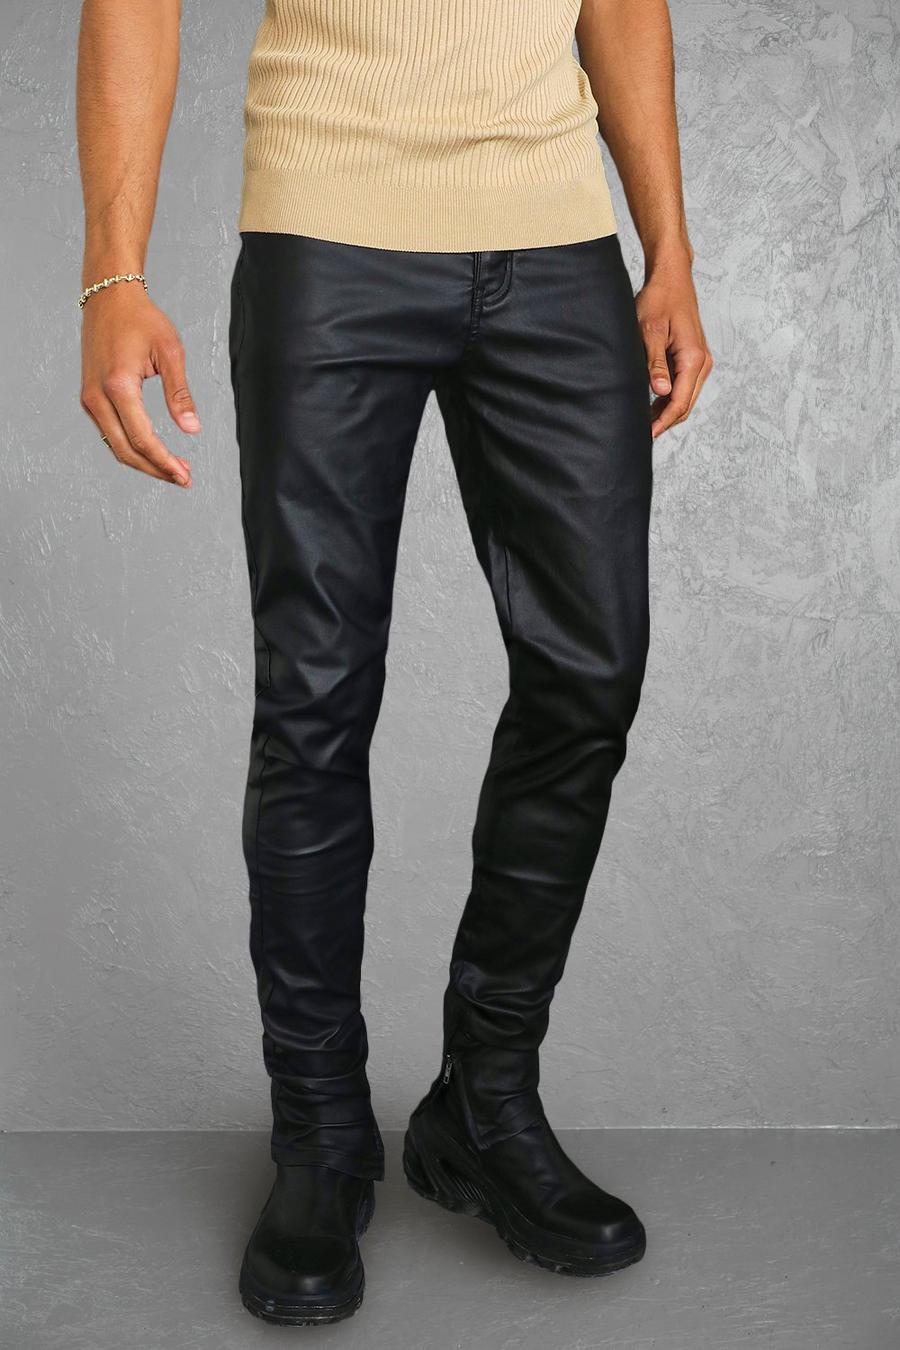 Men's Black Coated Jeans, Black Coated Jeans Mens